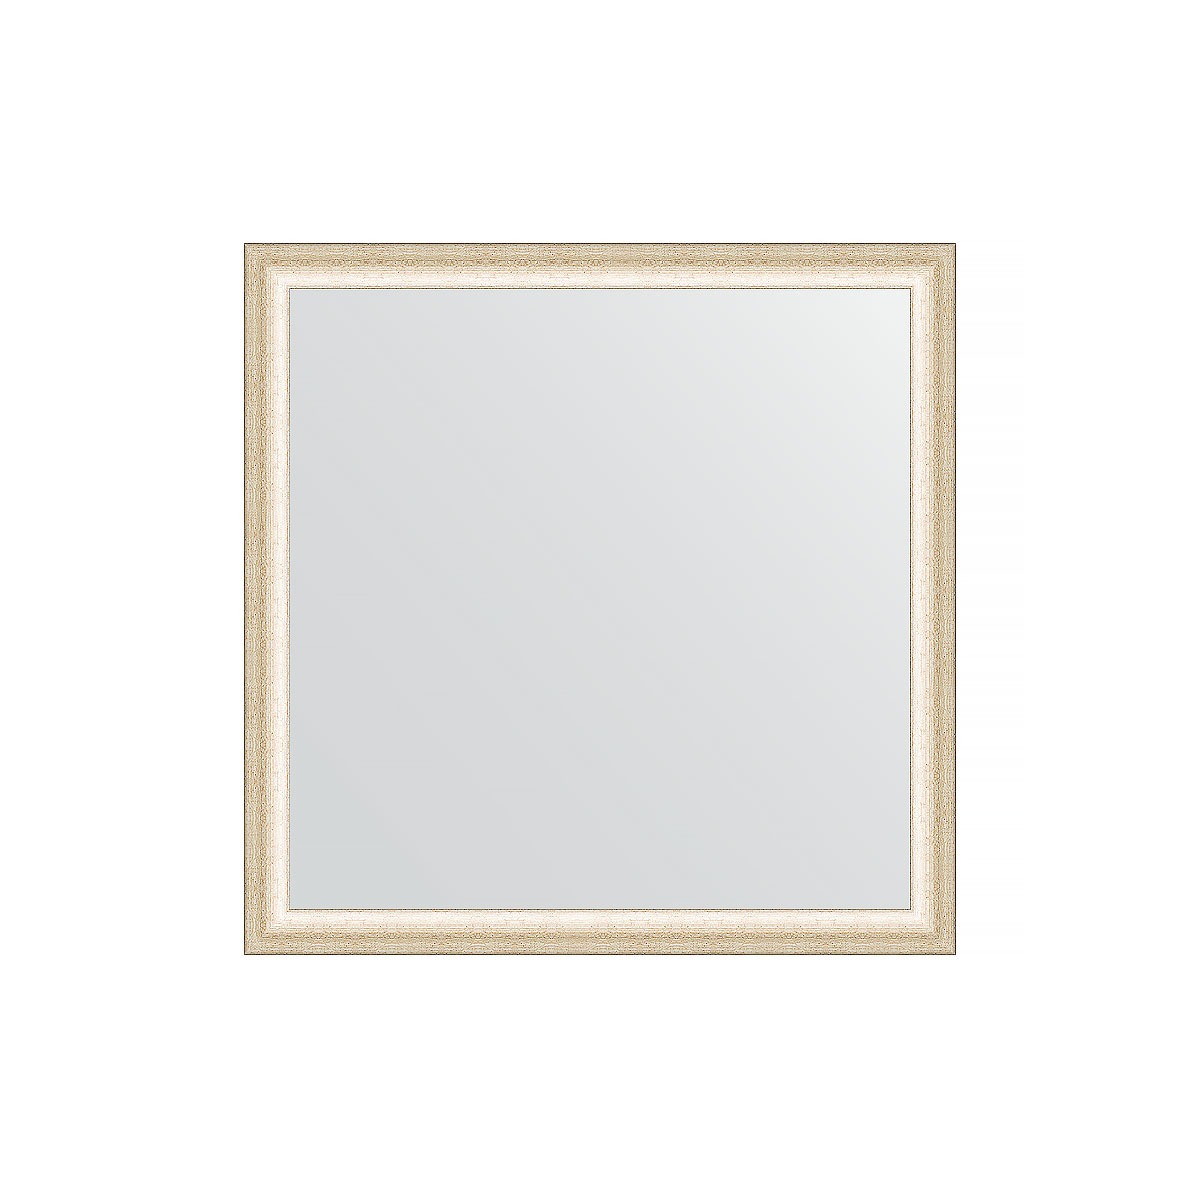 Зеркало в багетной раме Evoform состаренное серебро 37 мм 60х60 см зеркало в багетной раме evoform состаренное серебро 37 мм 60х60 см